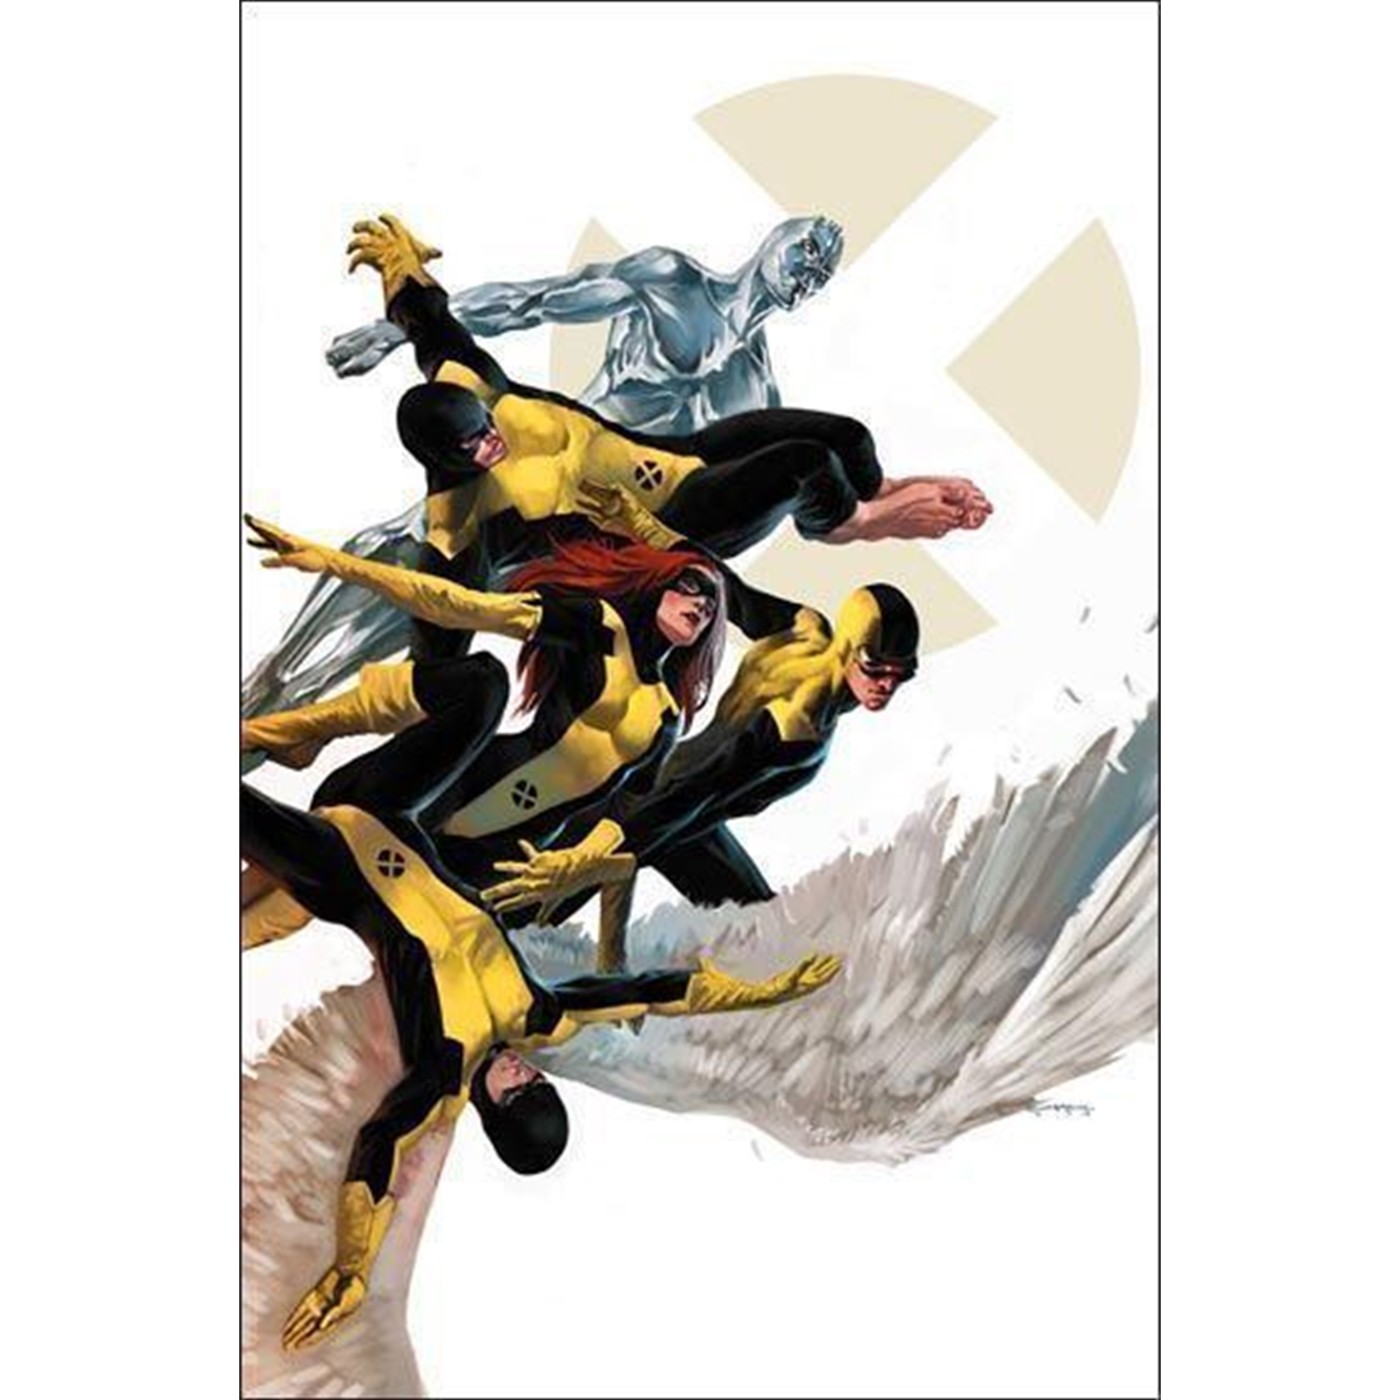 X-Men First Class Poster